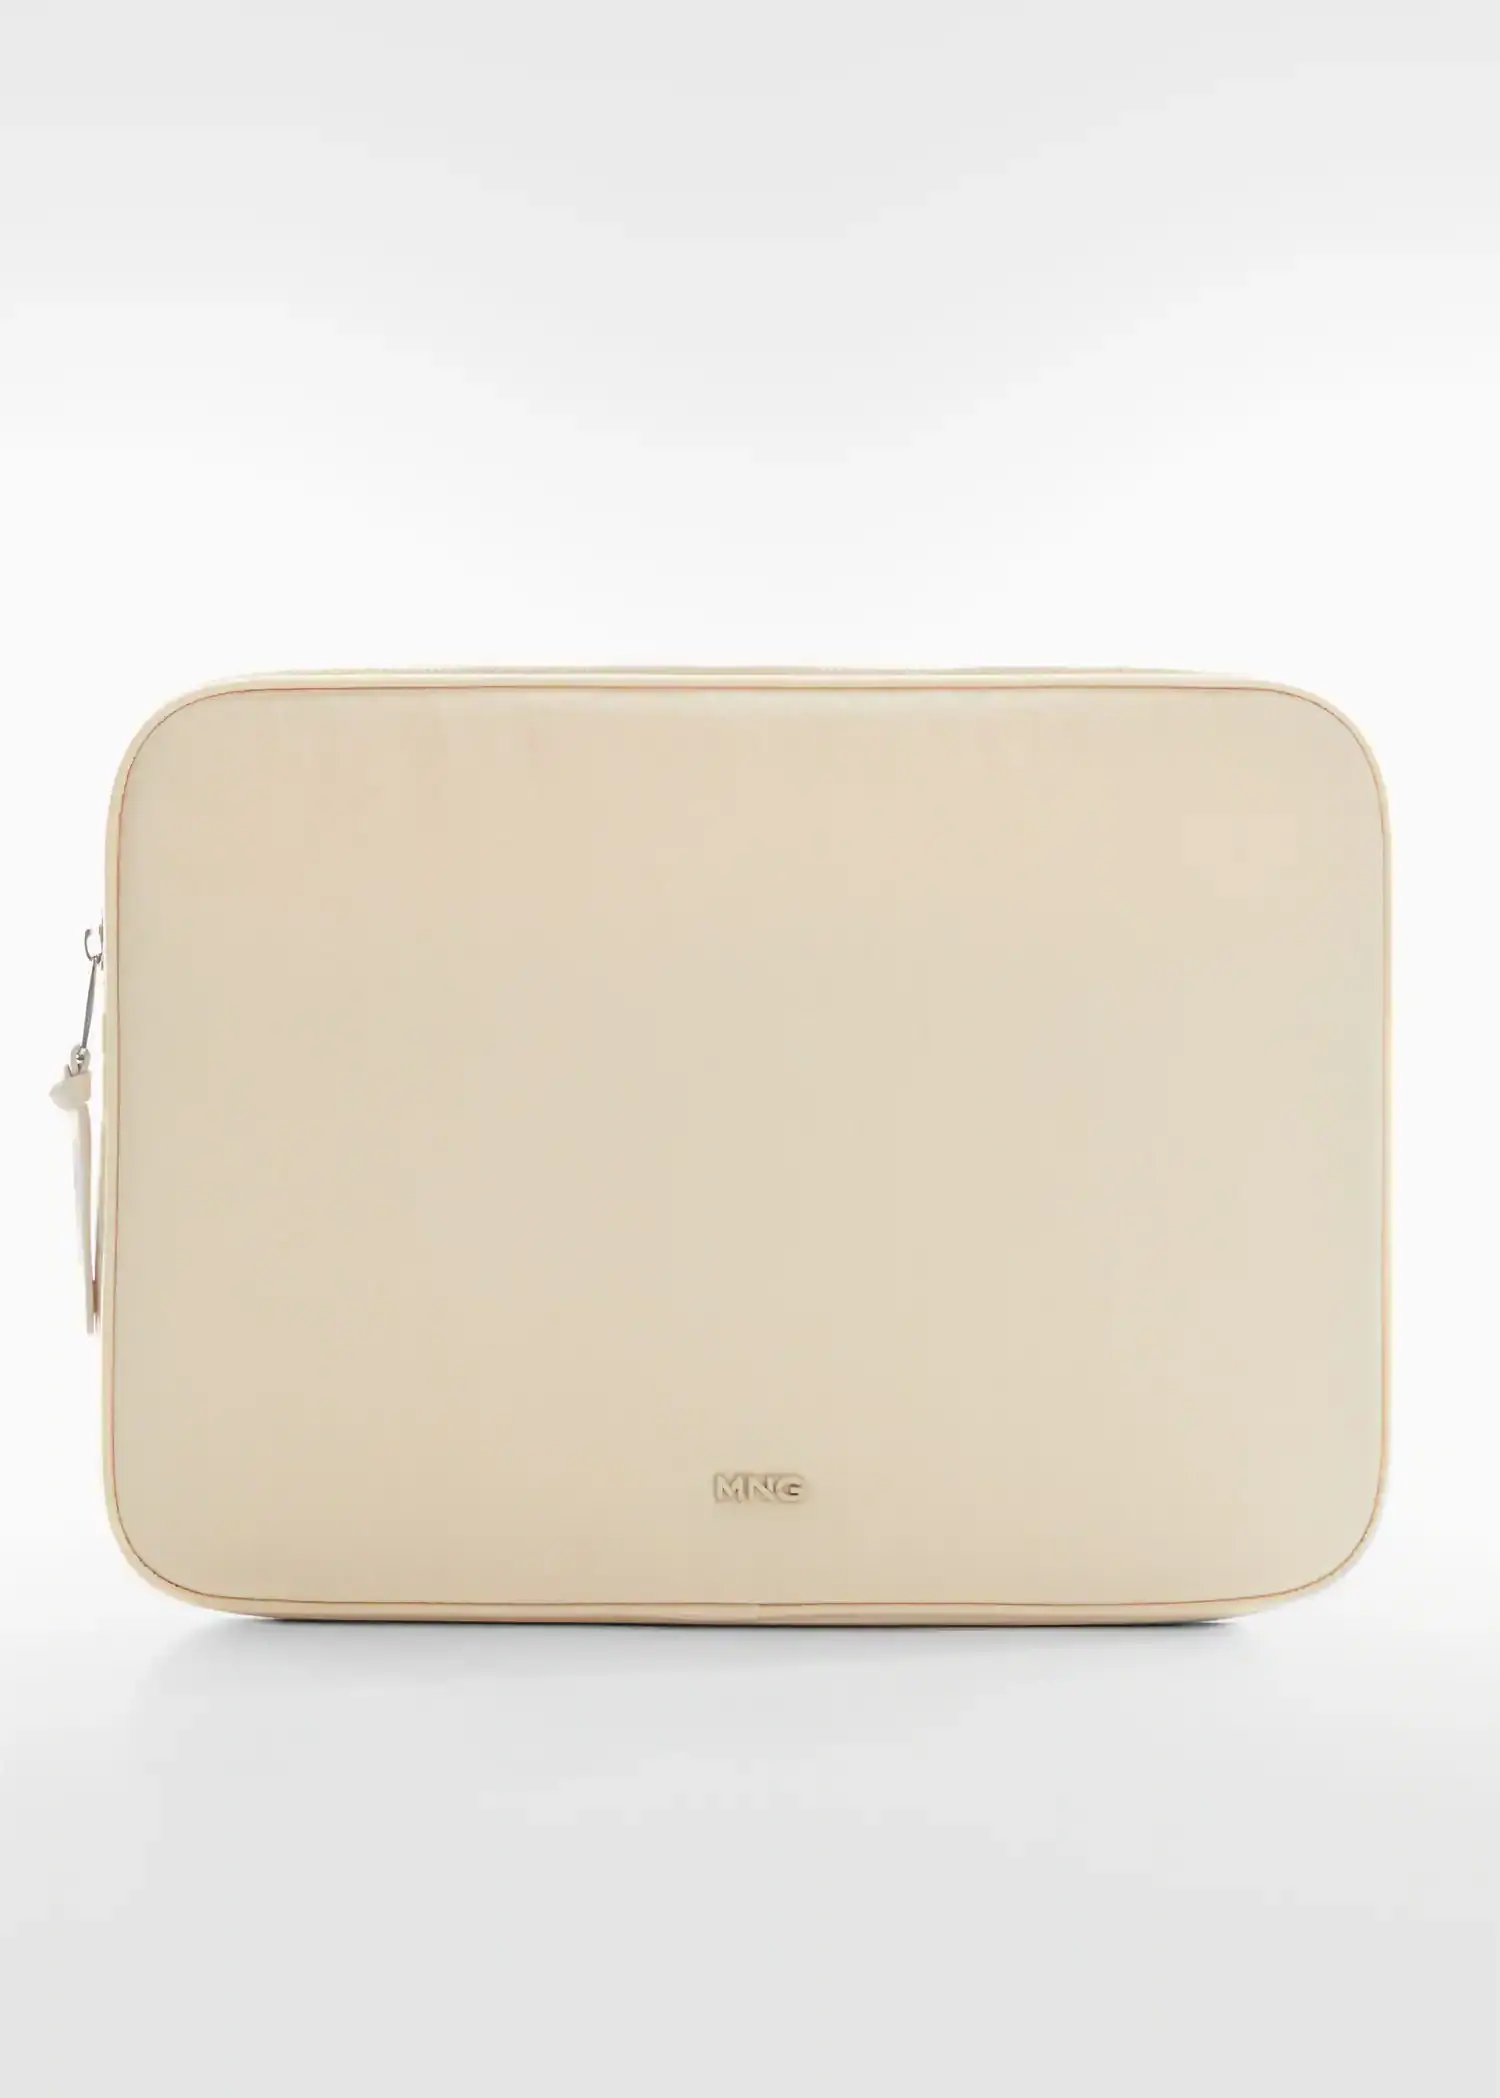 Mango Double-compartment laptop case. a white laptop case sitting on top of a white table. 